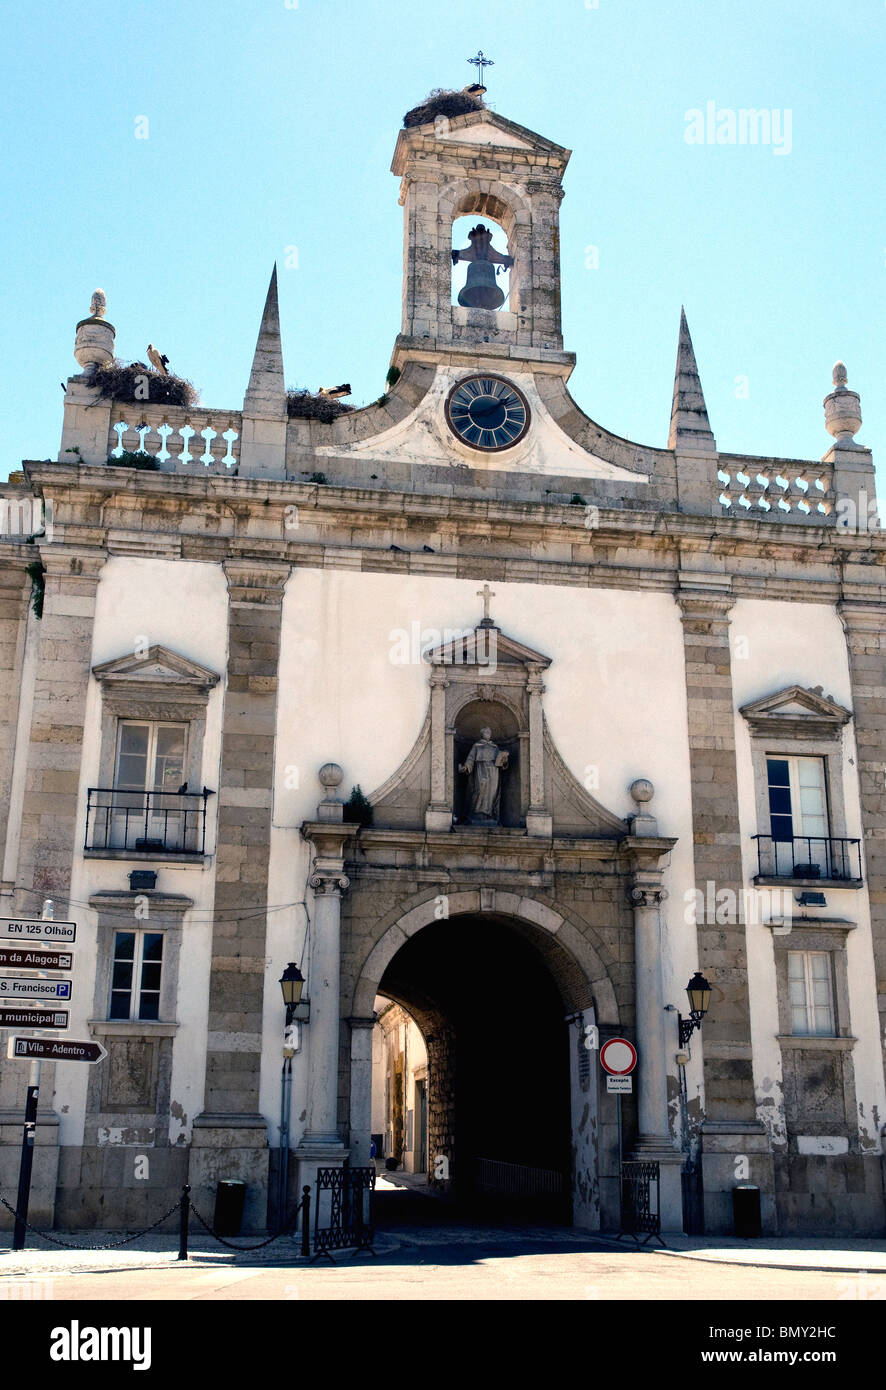 Faro dell'Arco da Vila, grande entrata per una tranquilla cittadina interna di piccole case, i musei e la cattedrale Foto Stock